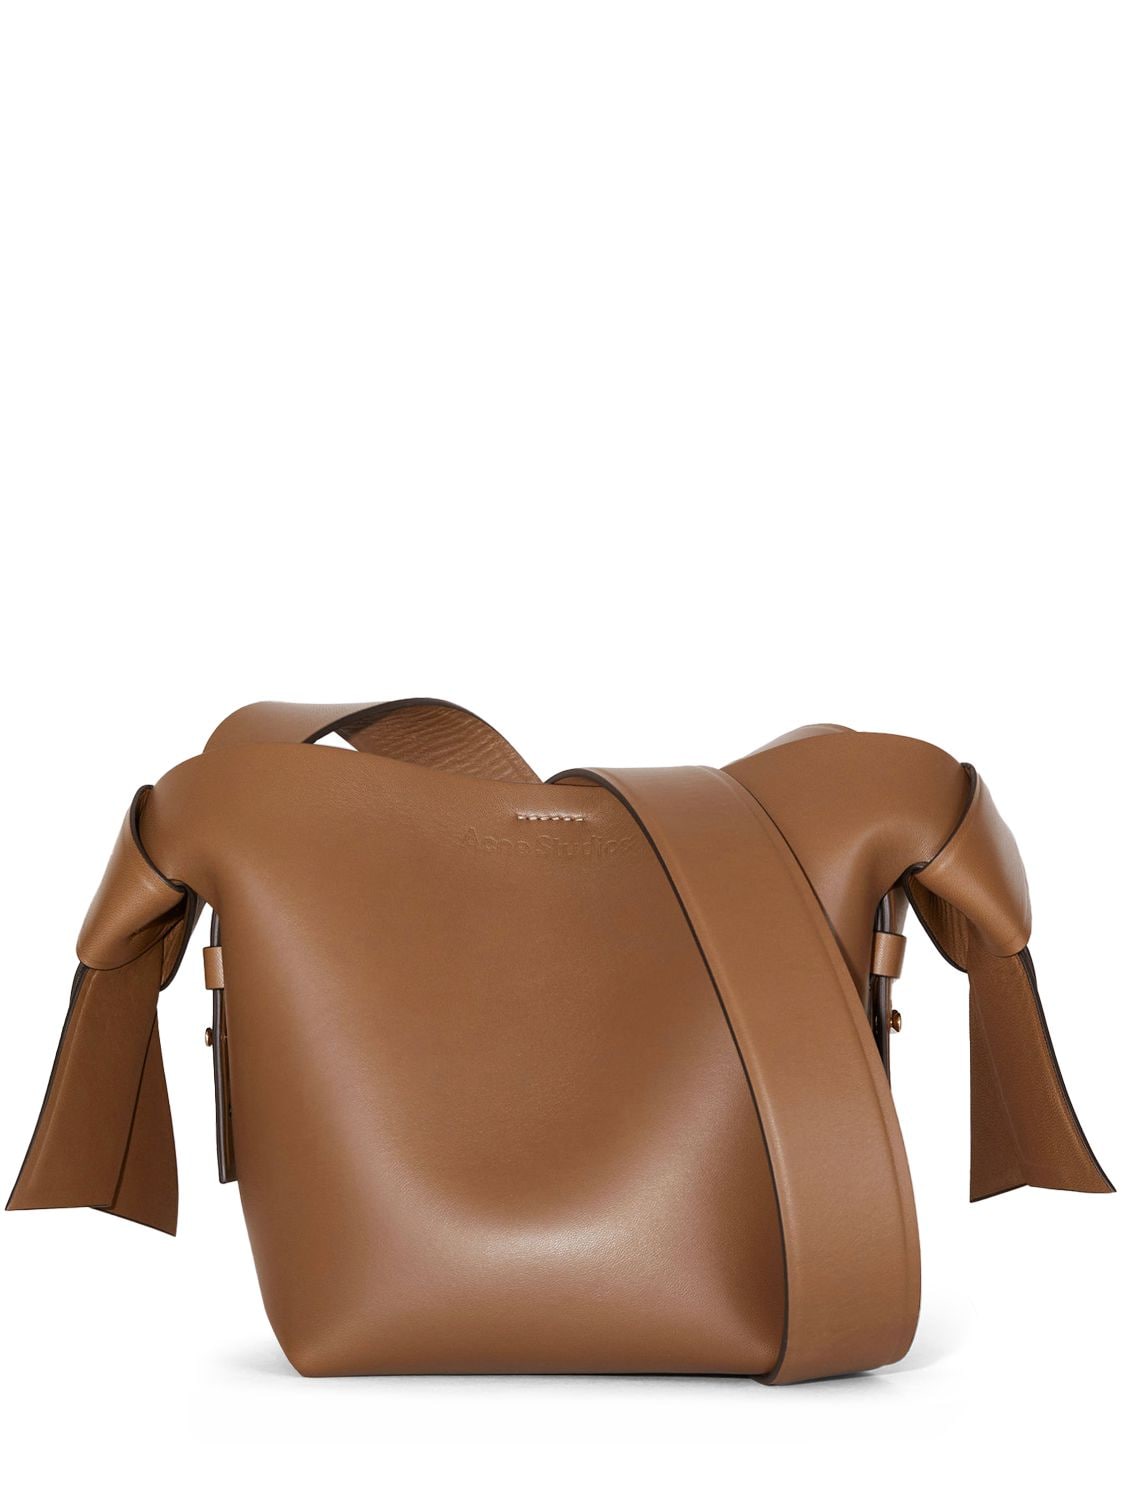 Acne Studios Mini Musubi Leather Top Handle Bag In Camel Brown